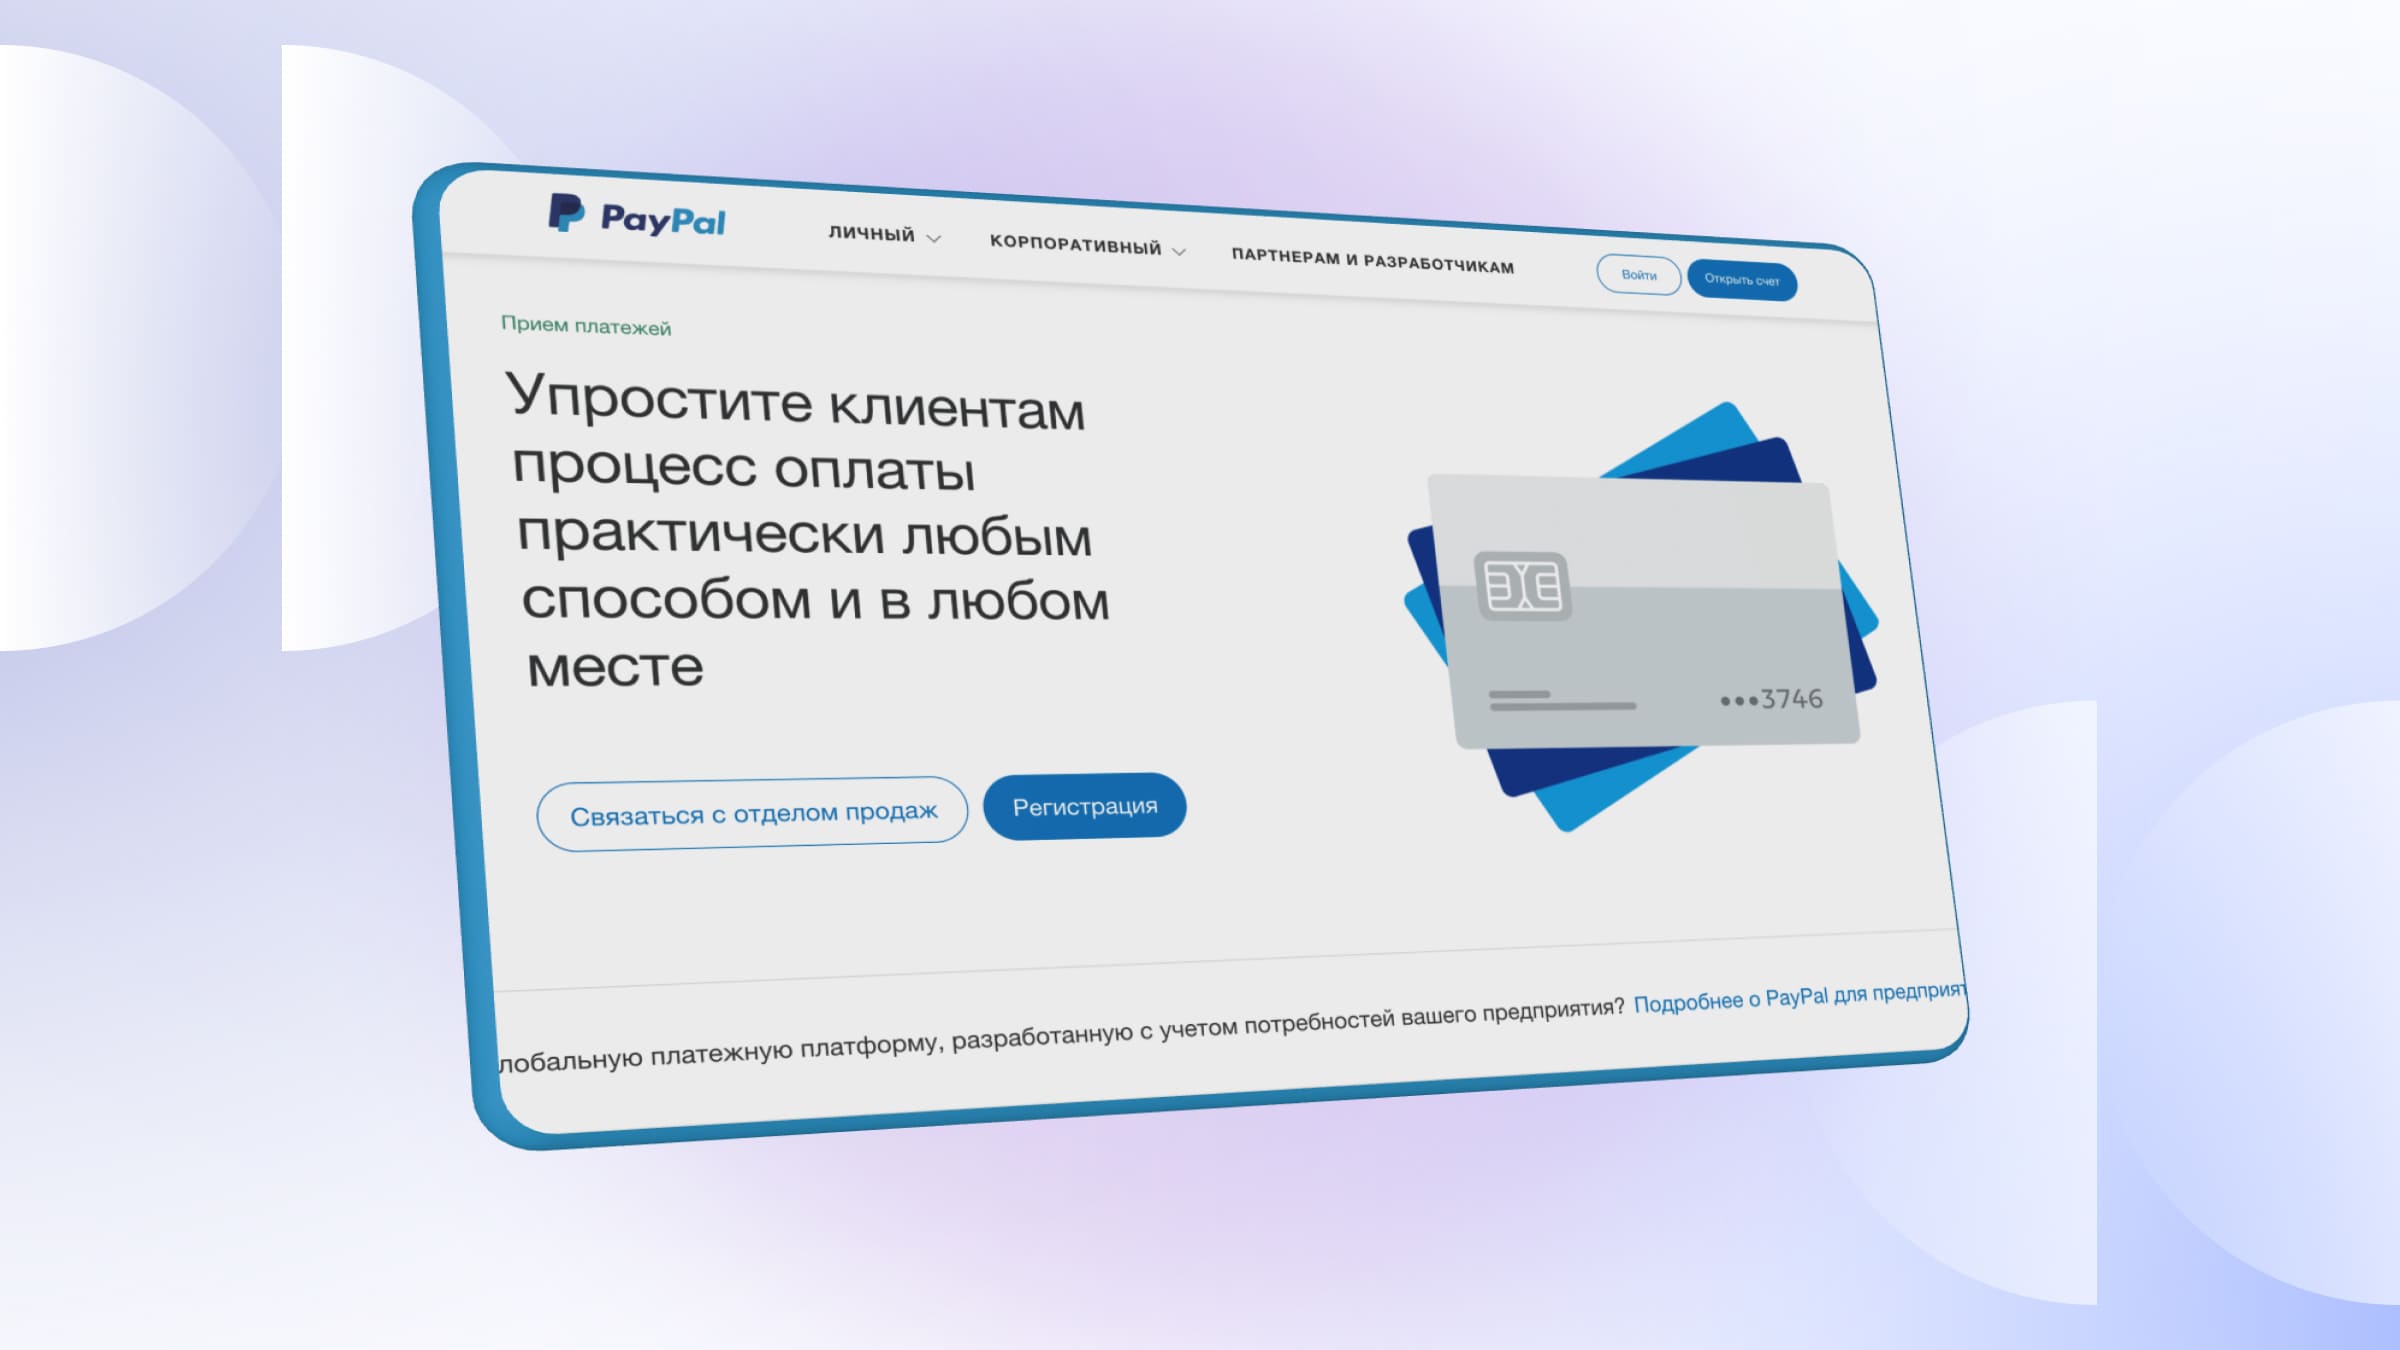 Среди преимуществ PayPal можно выделить высокую безопасность и большой выбор валют.